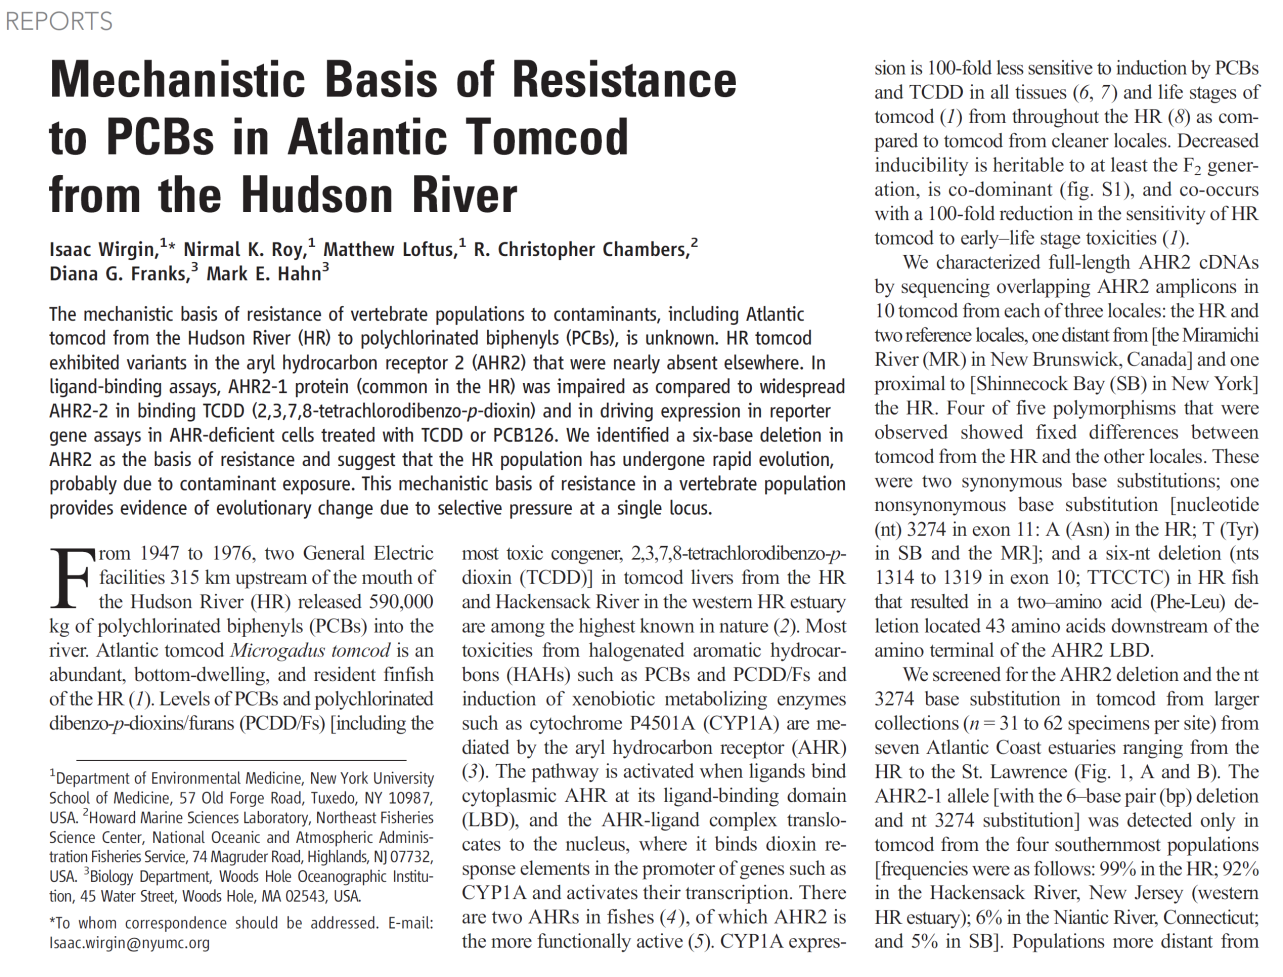 Mechanismu rezistence: U ryb došlo k mutaci v genu AHR2, která zajistila